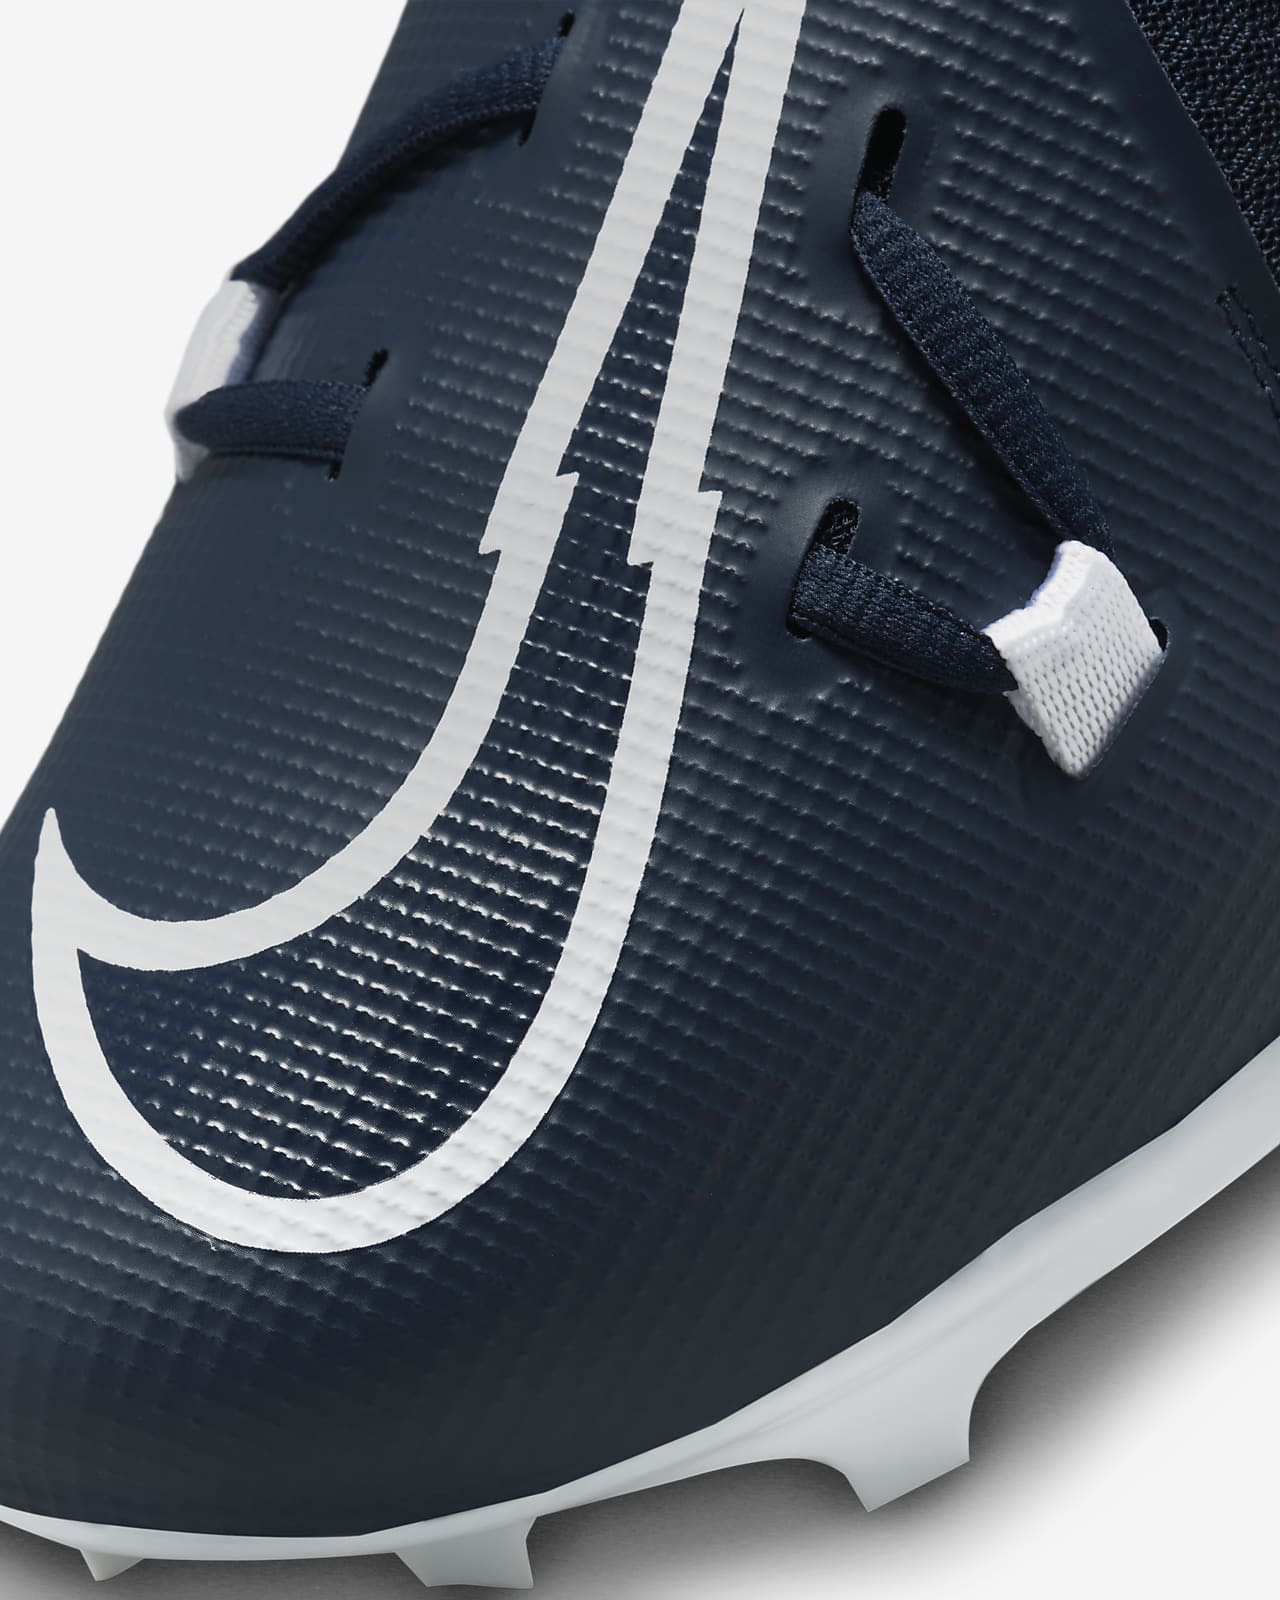 Percibir En el nombre interior Calzado de fútbol americano Nike Alpha Menace Pro 3 para hombre. Nike.com